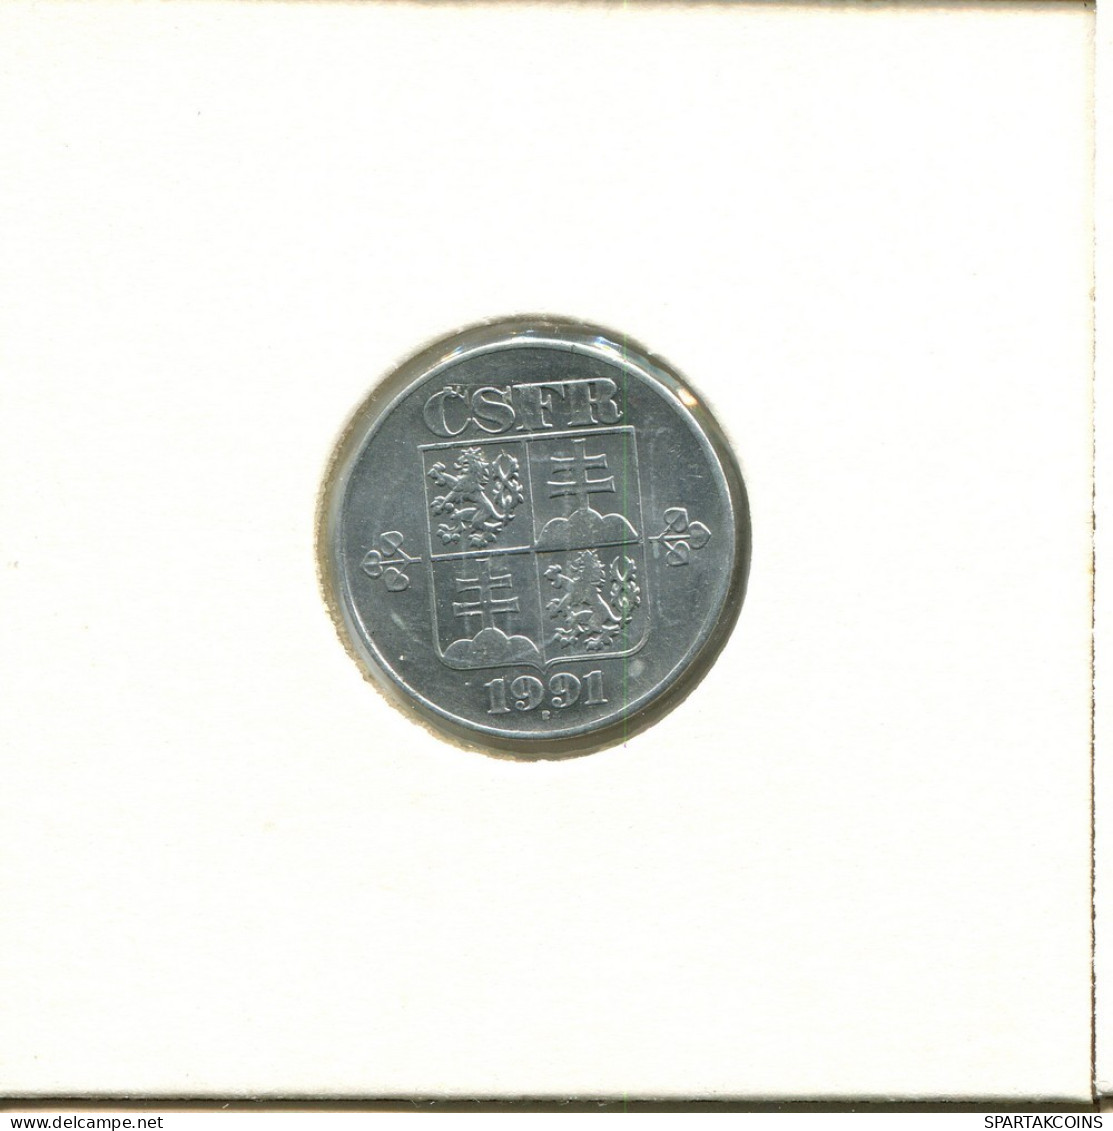 10 HALERU 1991 CHECOSLOVAQUIA CZECHOESLOVAQUIA SLOVAKIA Moneda #AZ937.E.A - Checoslovaquia